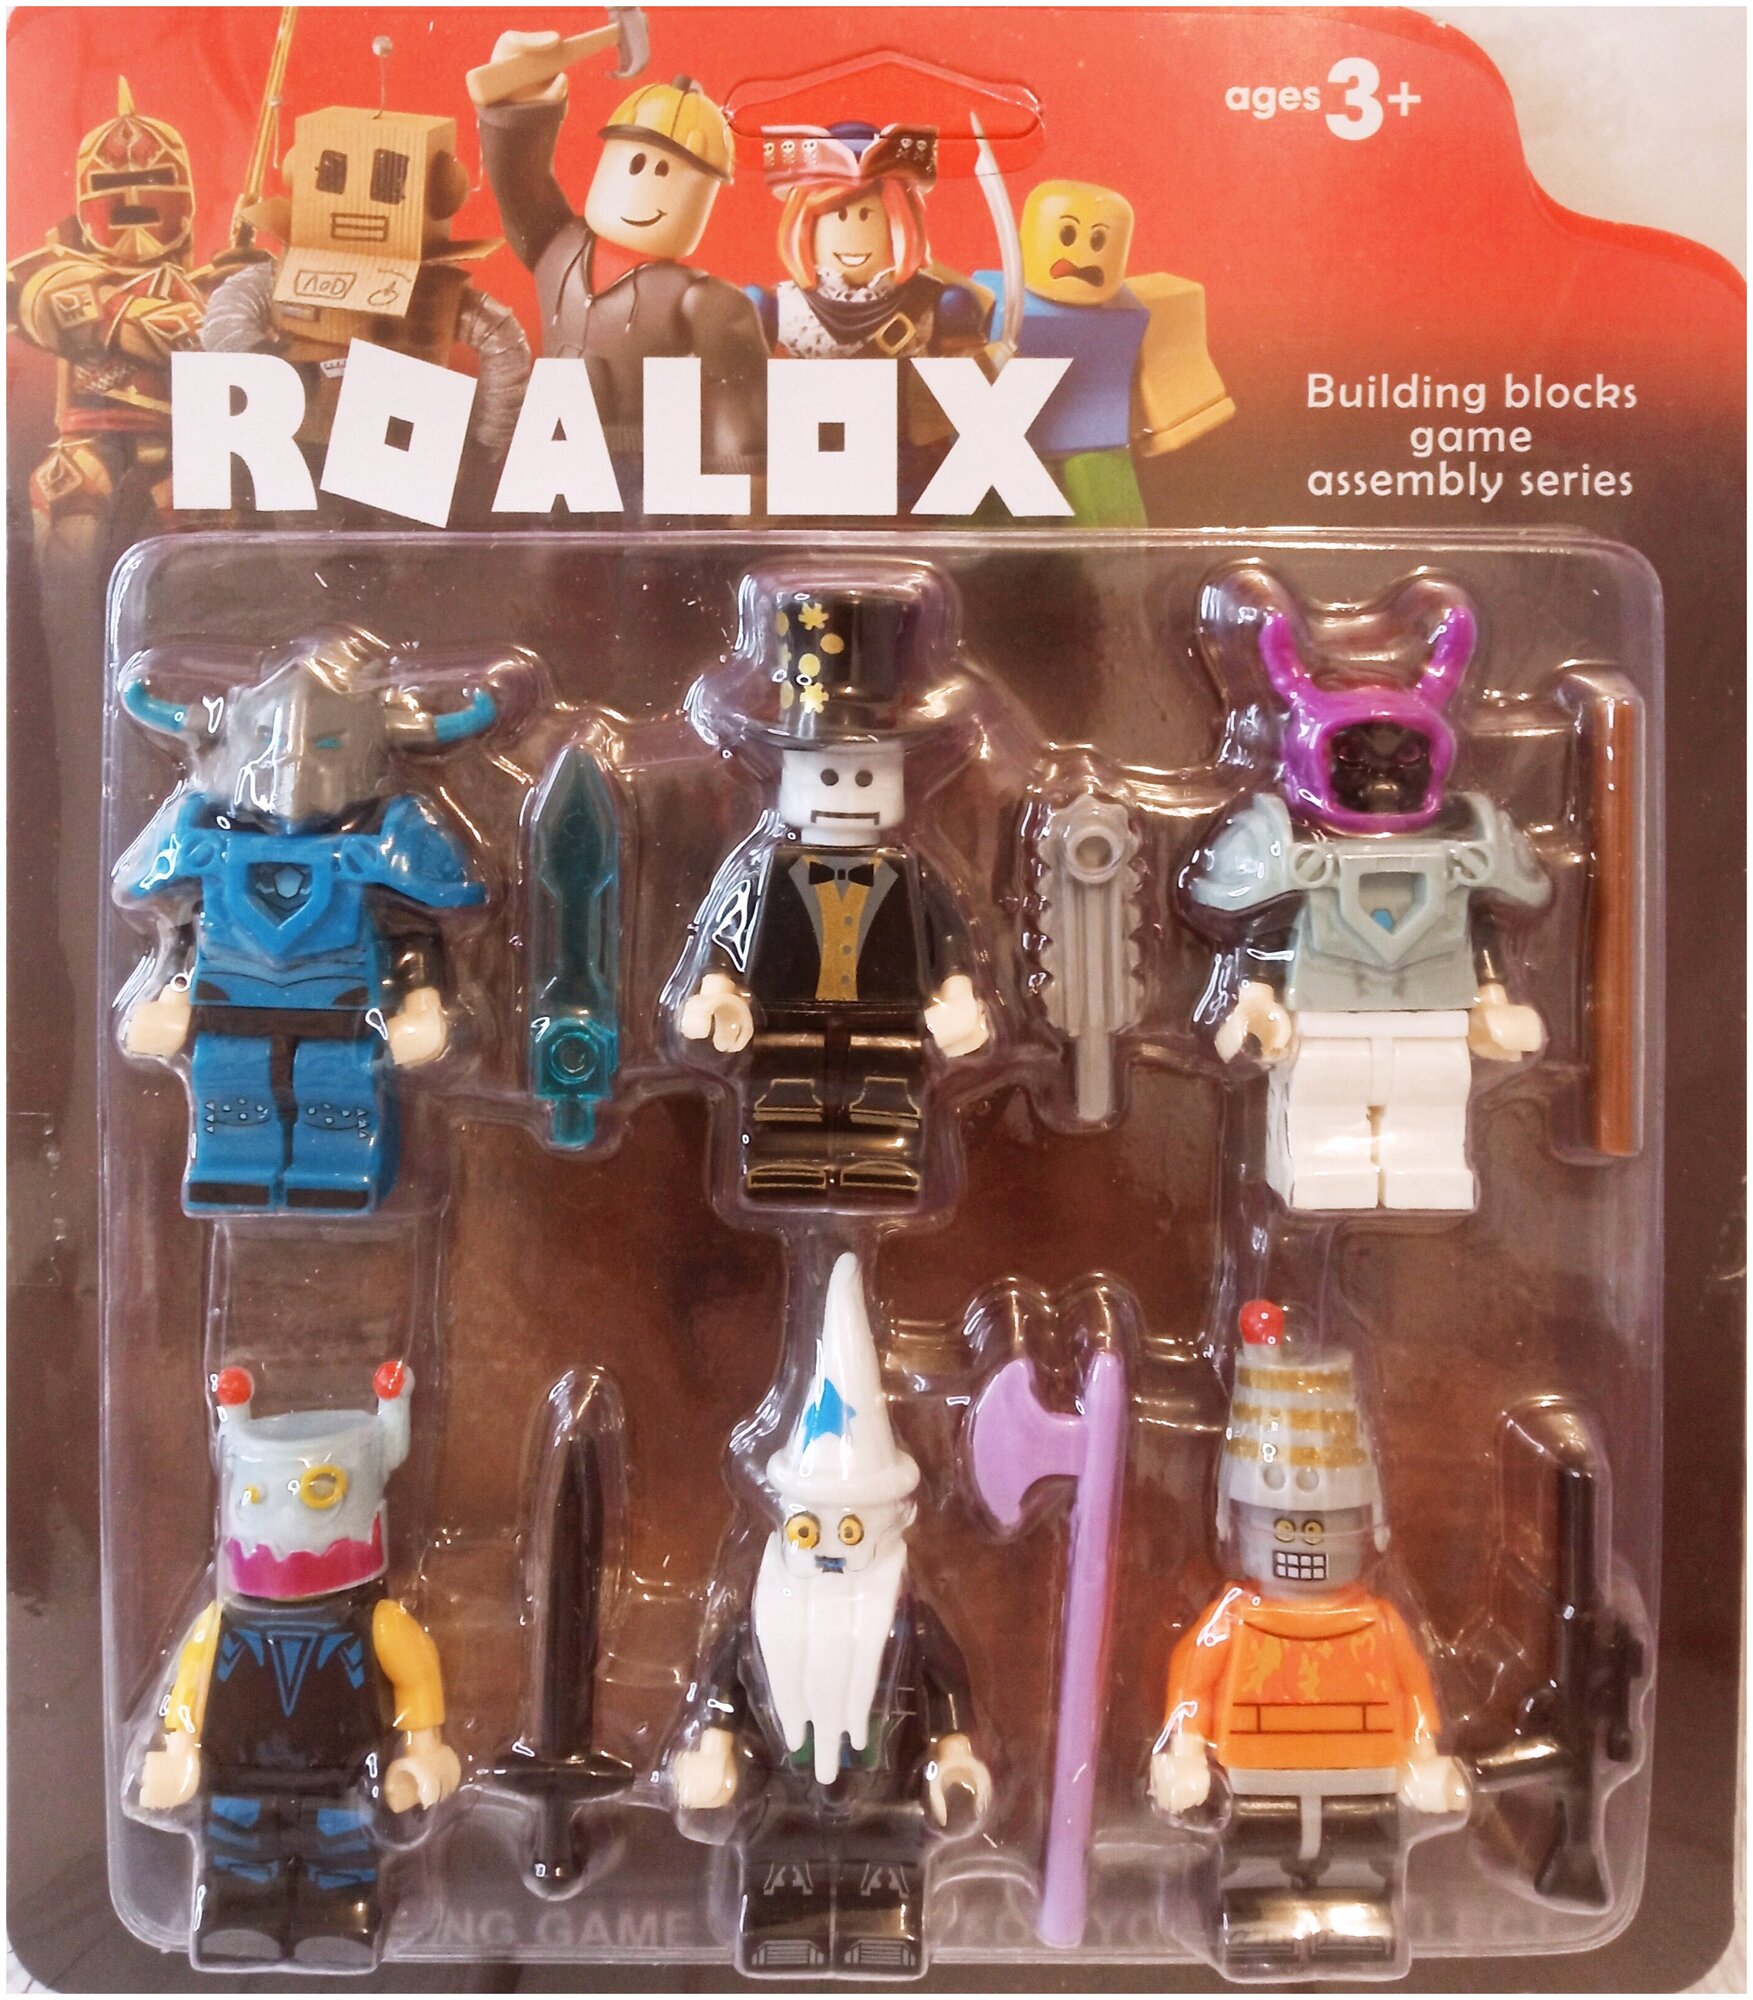 Роблокс фигурки 6 шт майнкрафт фигурки ниндзяго фигурки роблокс игрушки Roblox фигурки roblox набор роблокс брелок